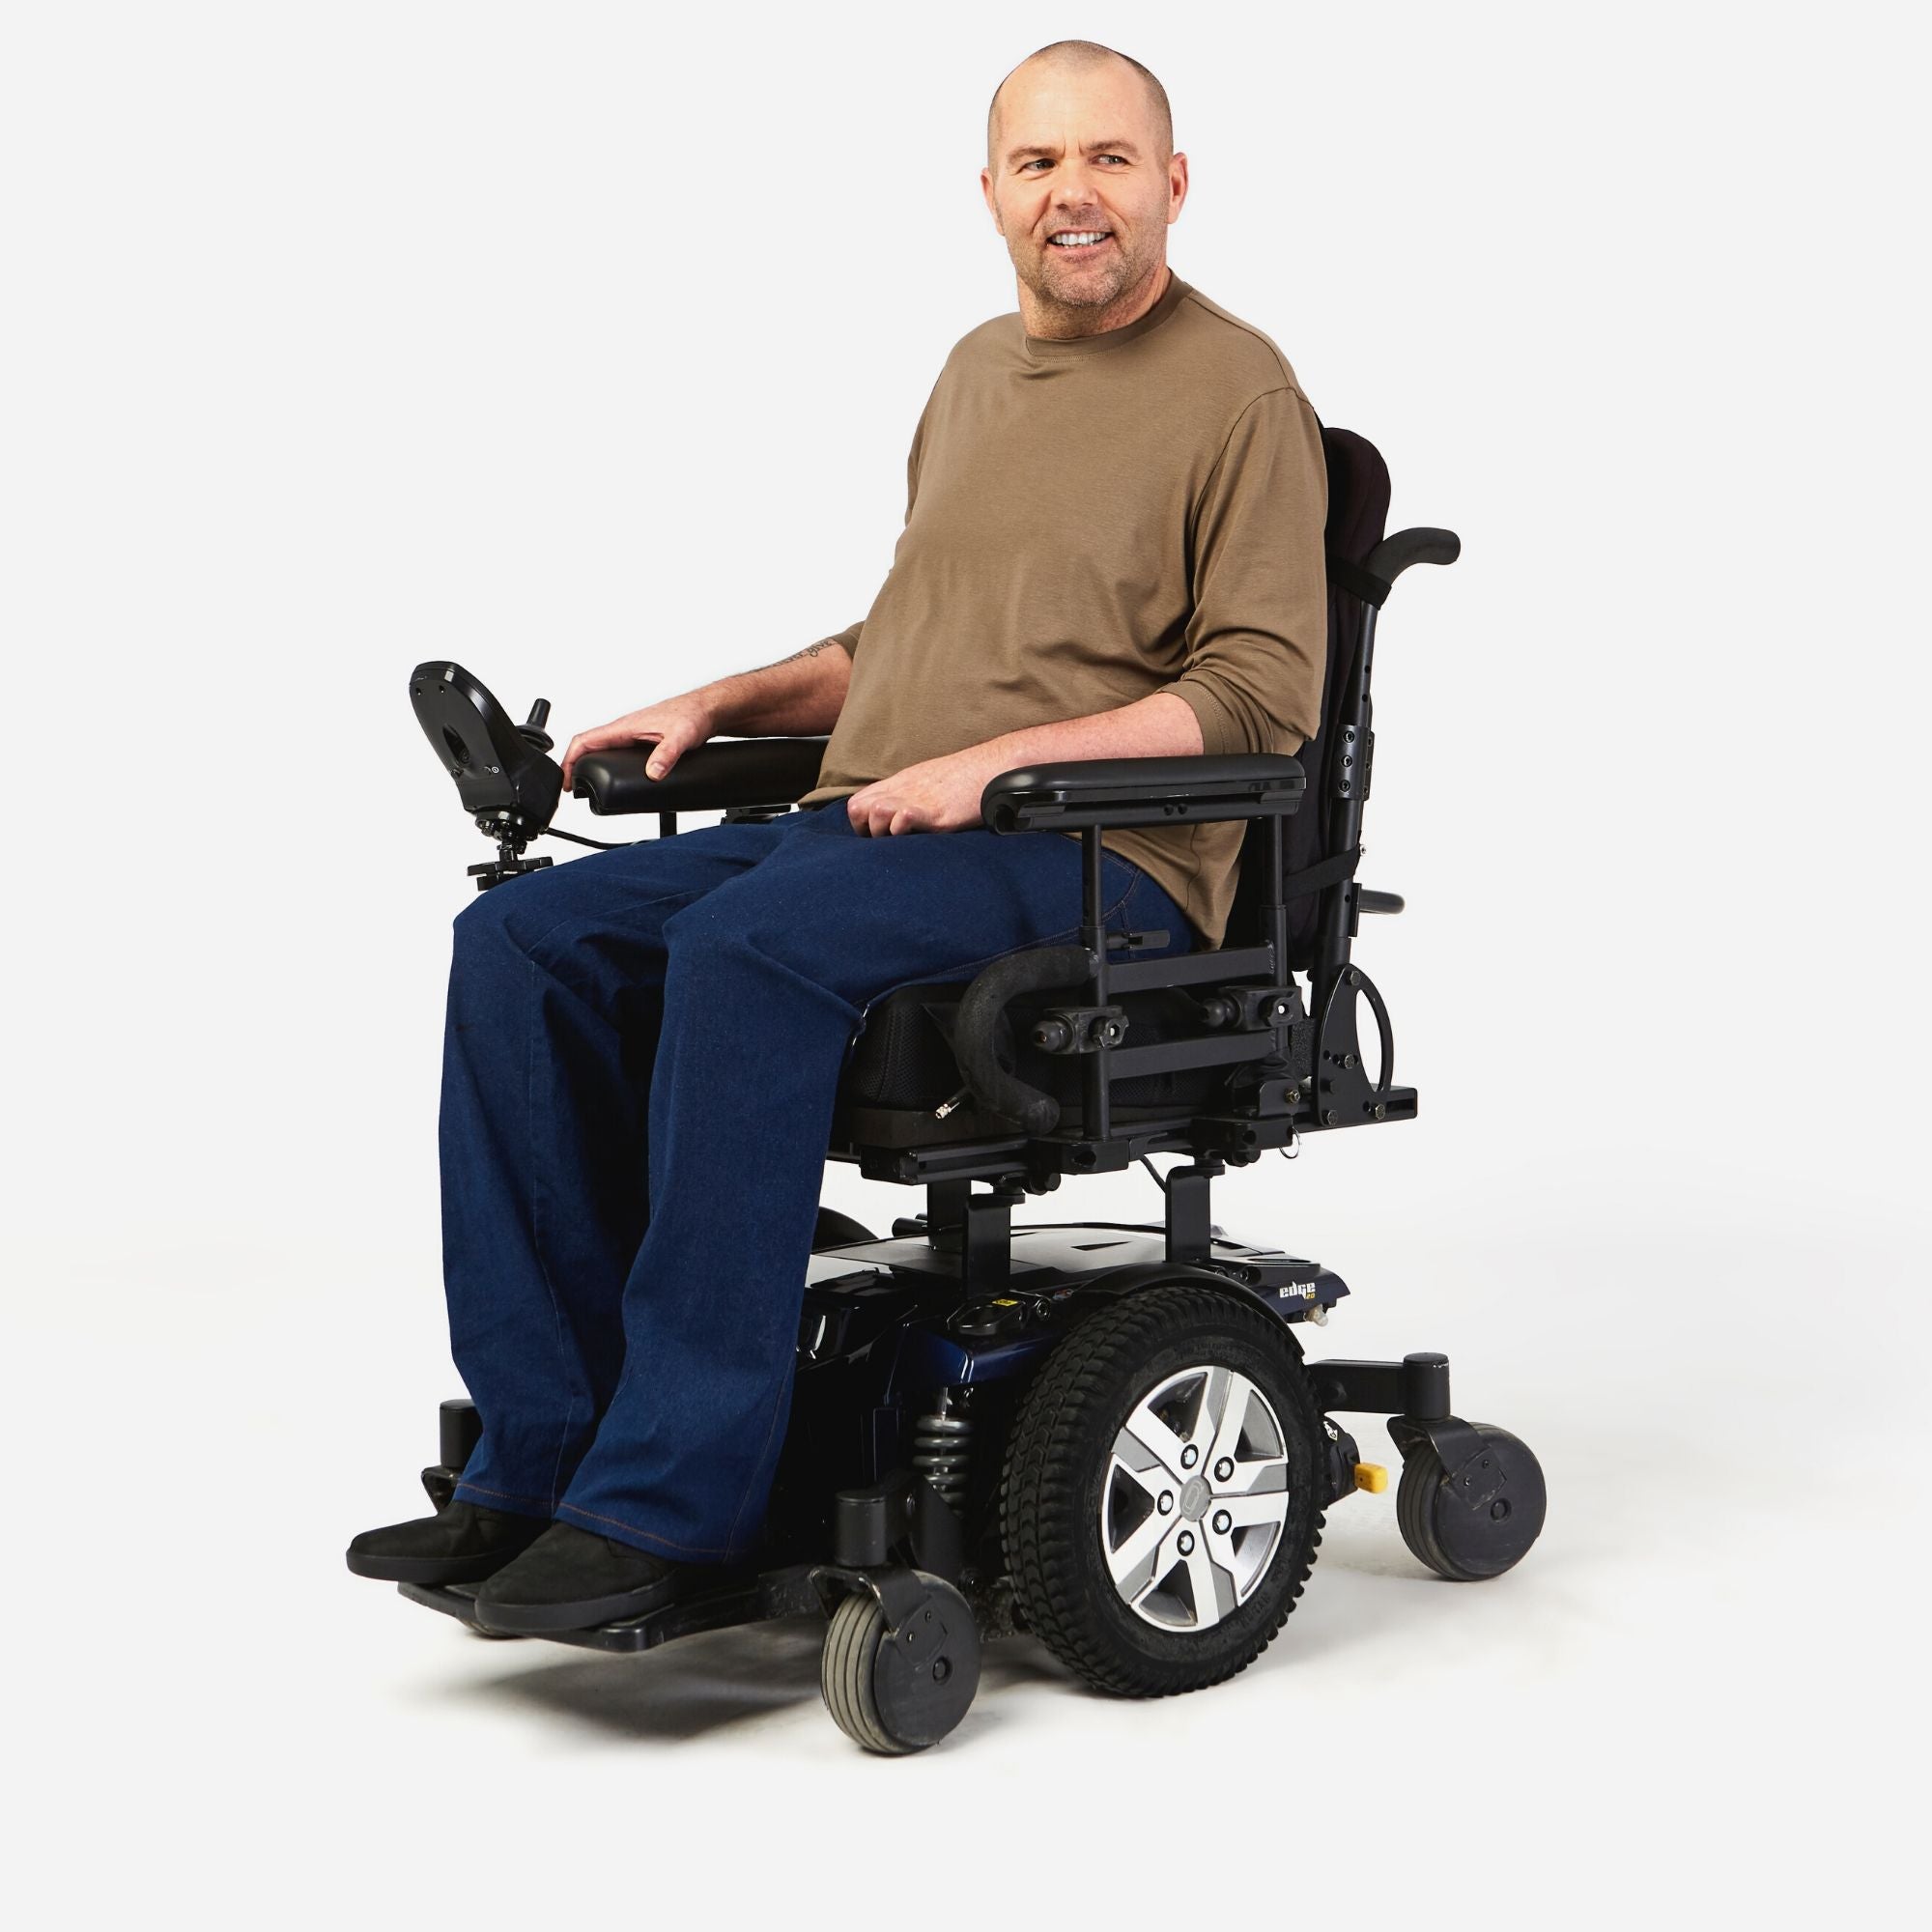 Dundas Wide-leg Stretch Jean in a Wheelchair Cut